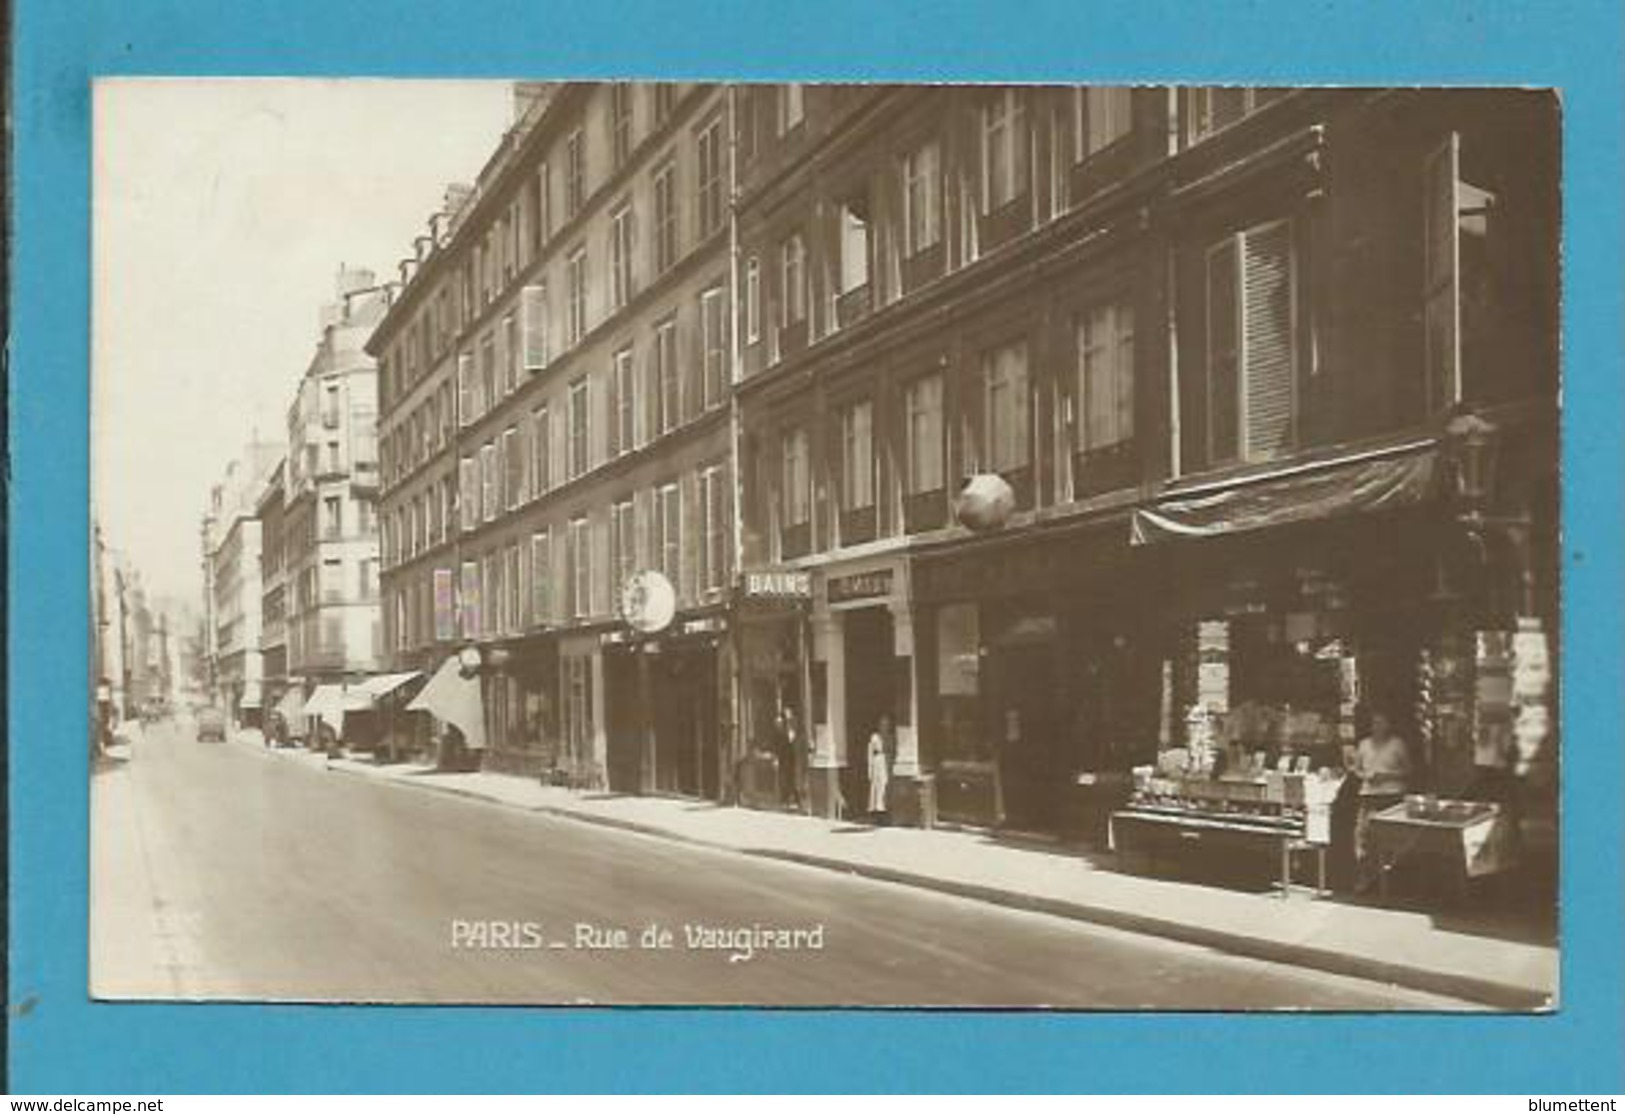 CPSM - Marchand De Cartes Postales Rue De Vaugirard PARIS - Petits Métiers à Paris